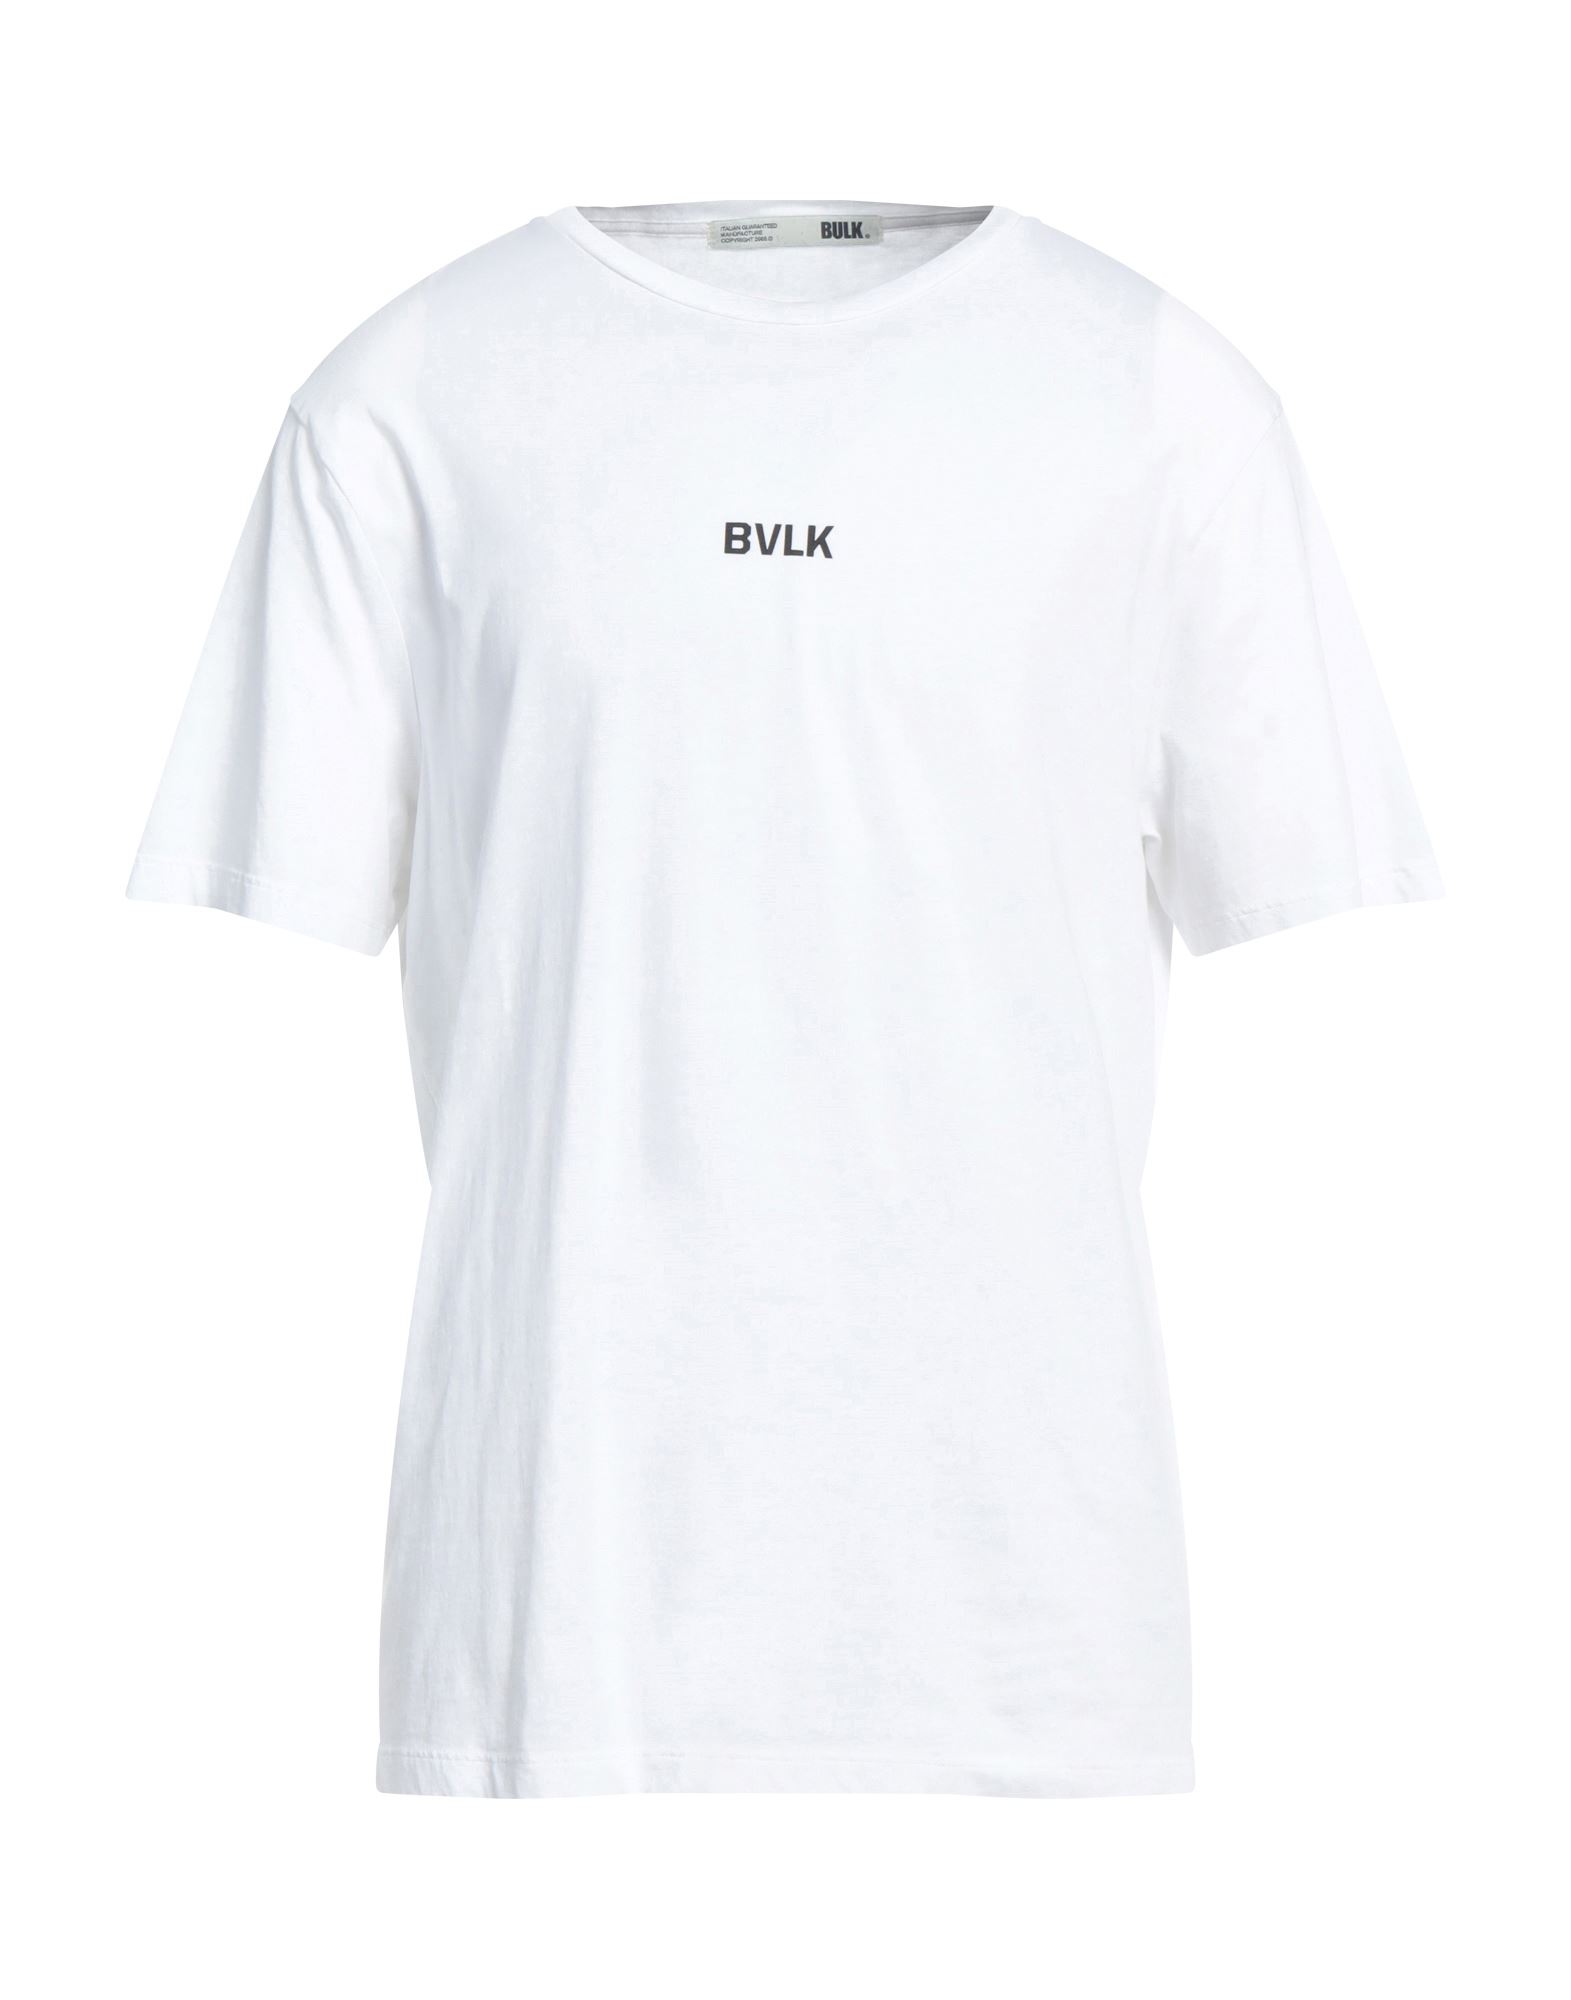 Shop Bulk Man T-shirt White Size Xxl Cotton